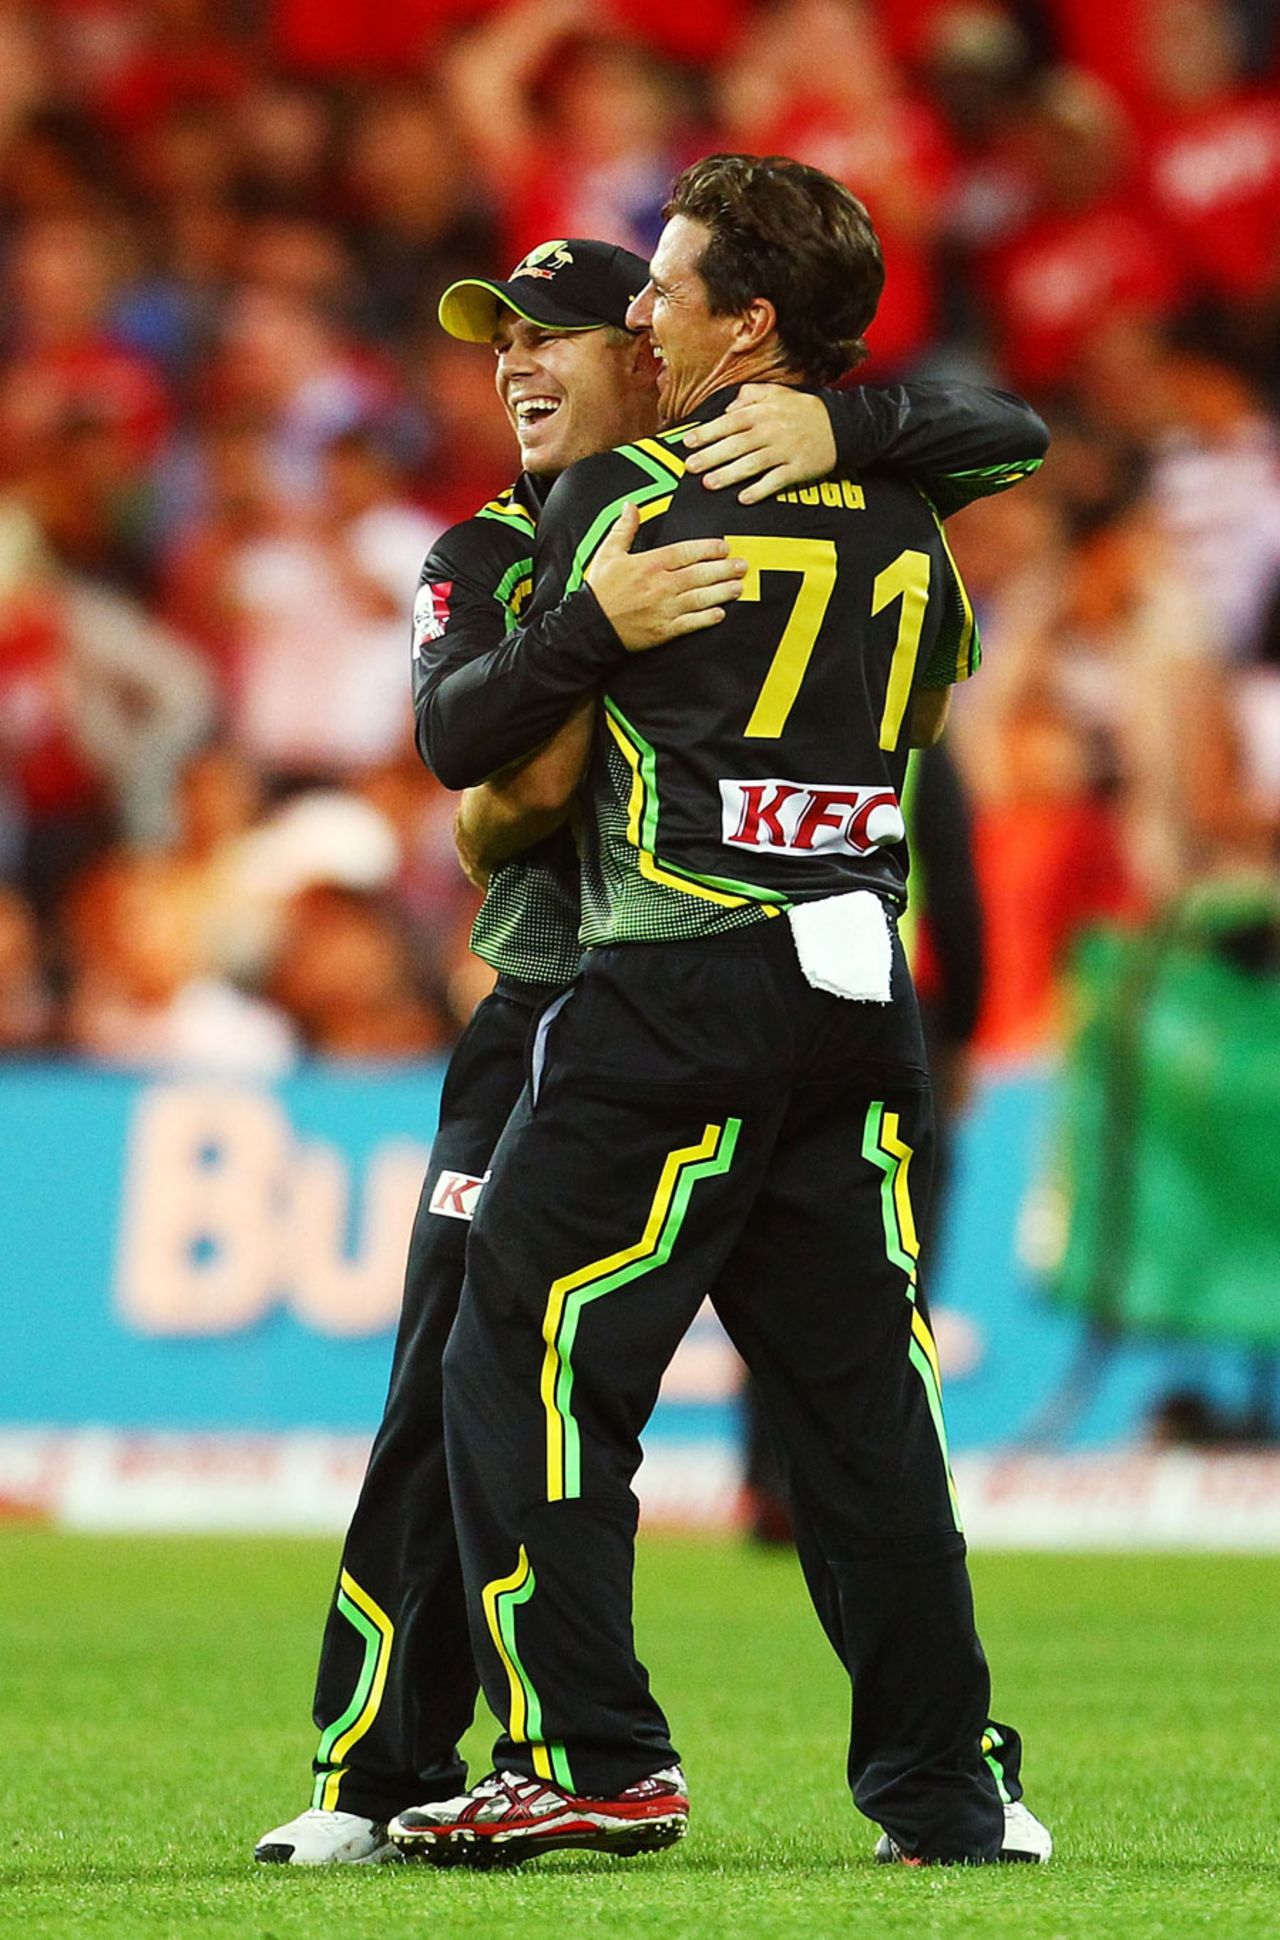 Brad Hogg struck on international return, Australia v India, 1st Twenty20, Stadium Australia, Sydney, February 1, 2012